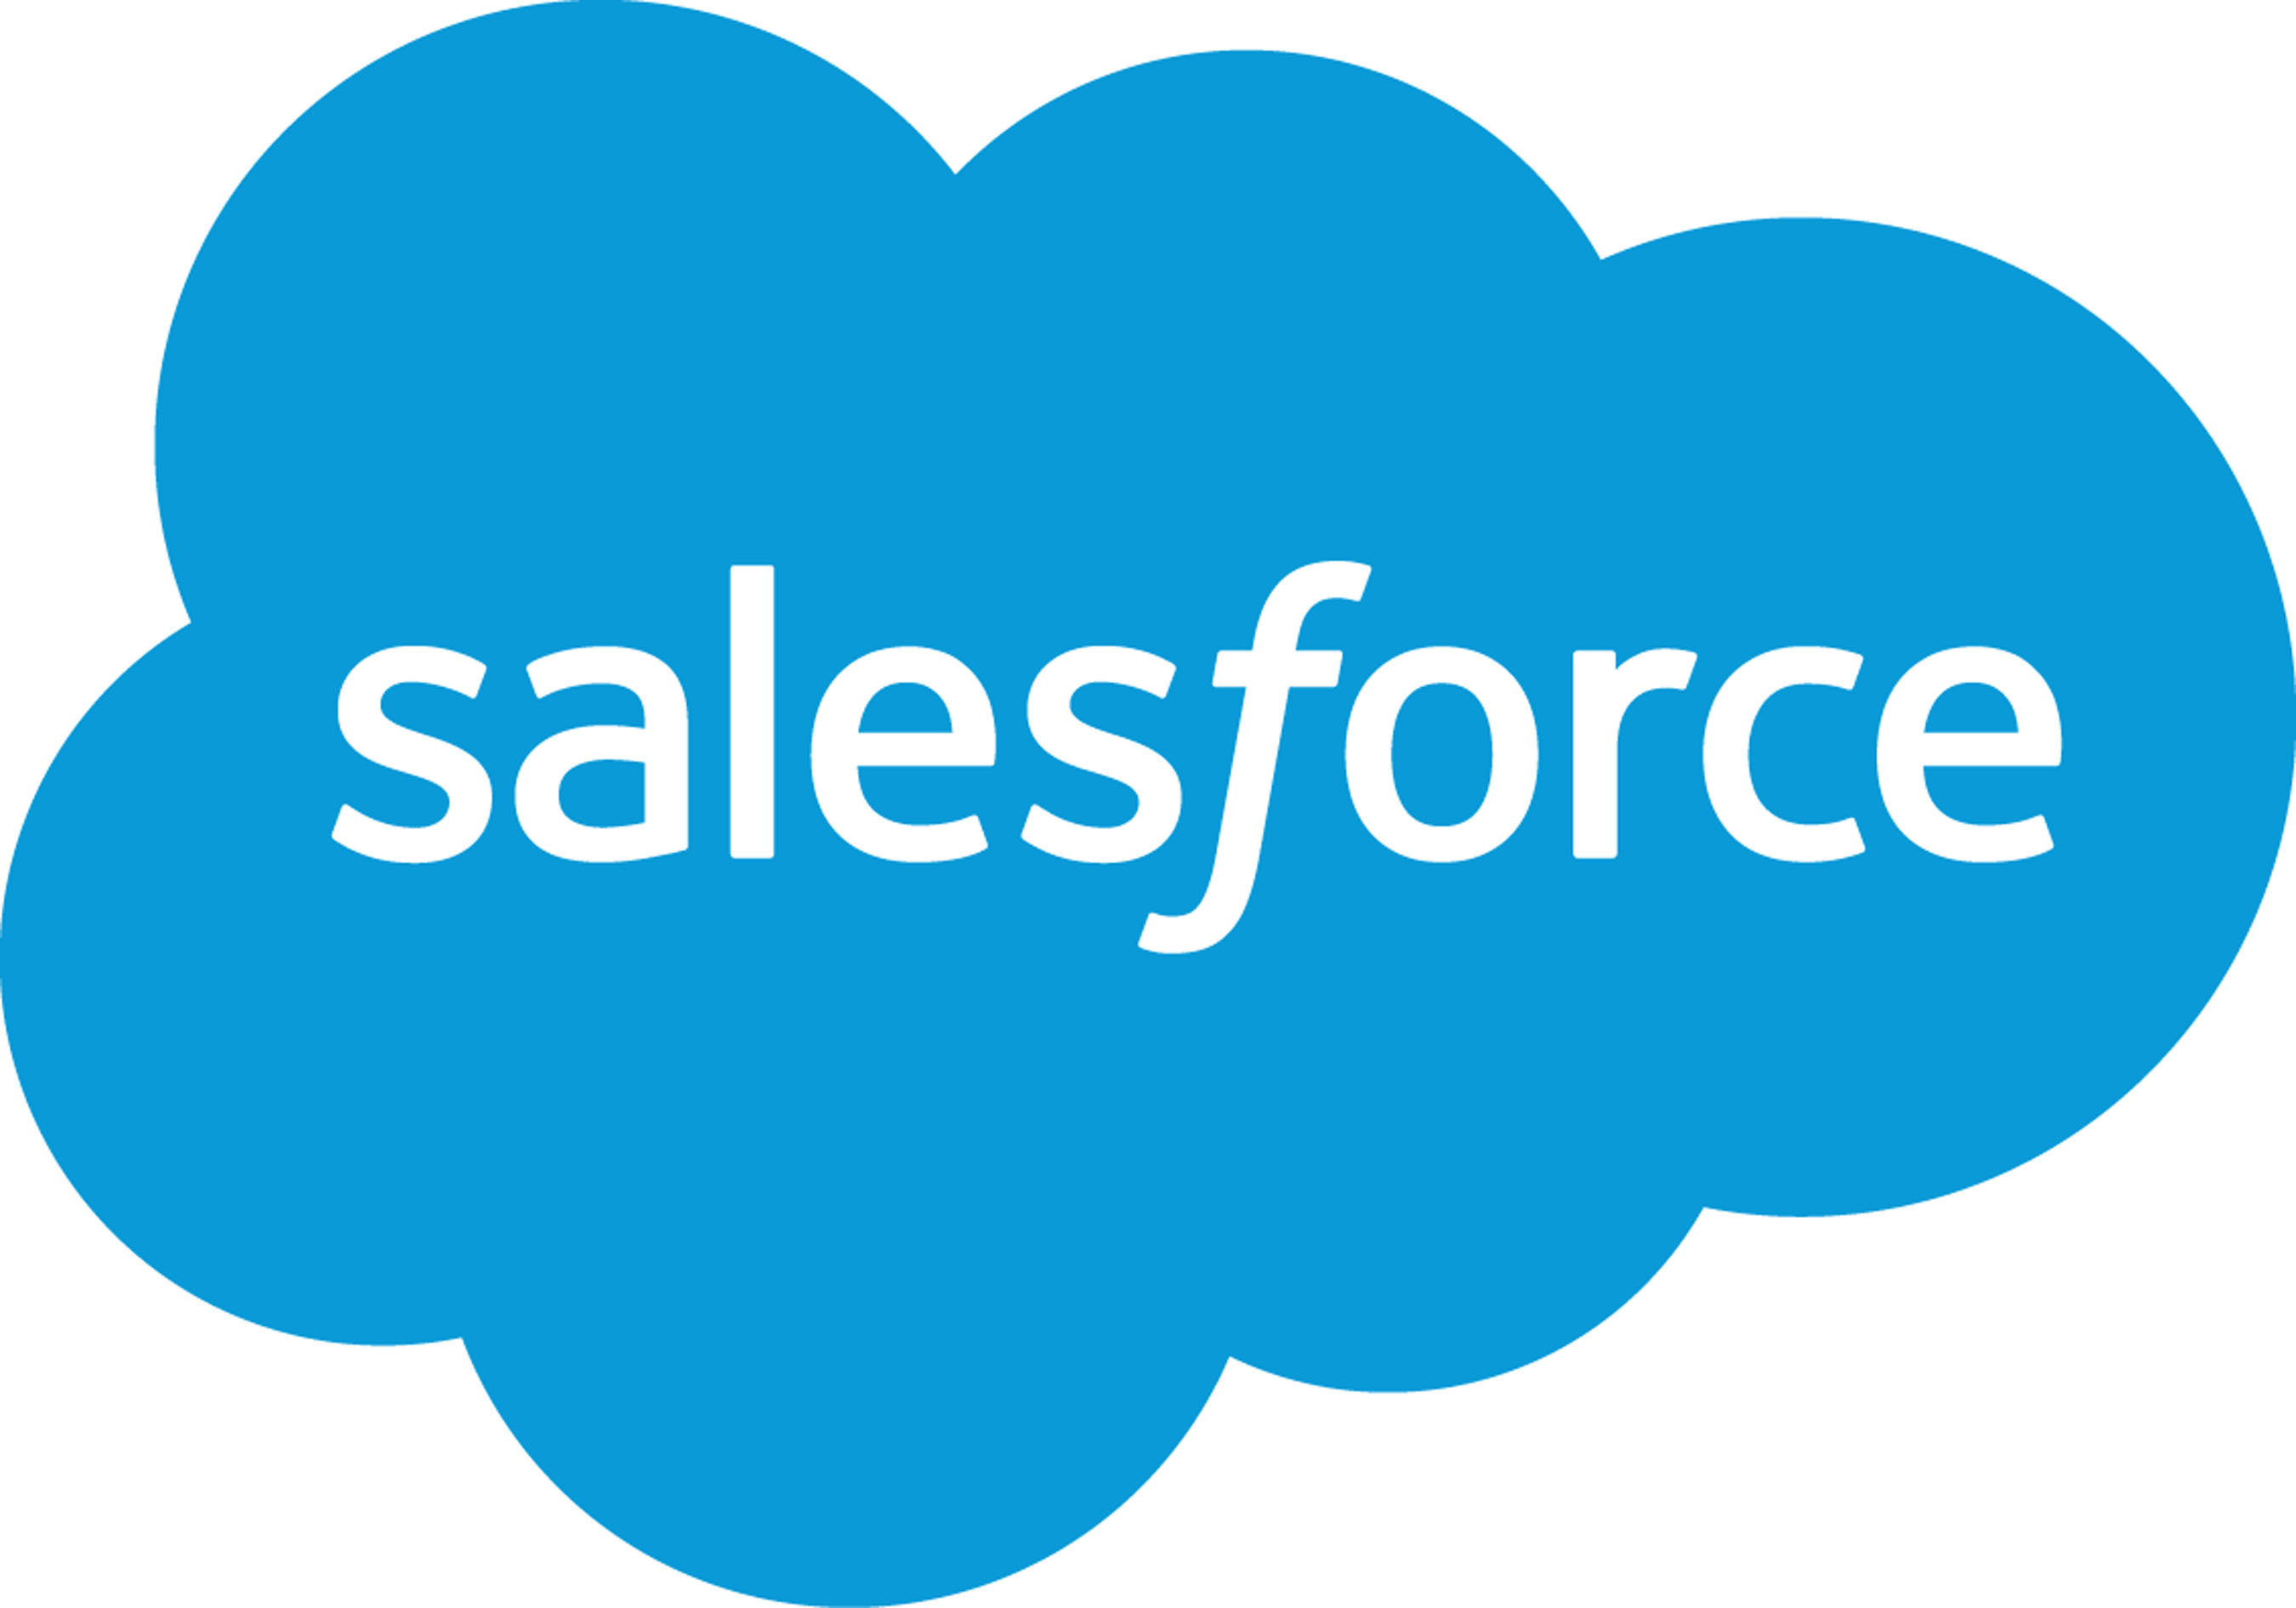 www.salesforce.com